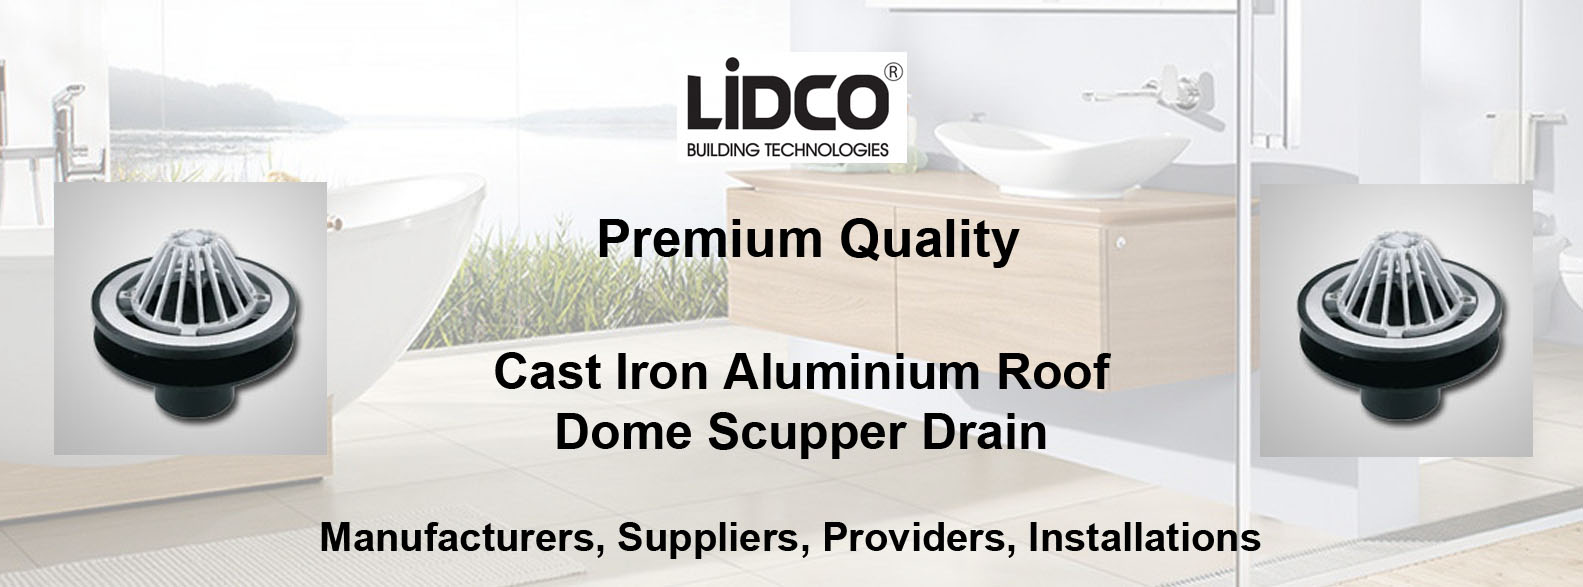 Cast Iron Aluminium Roof Dome Scupper Drain